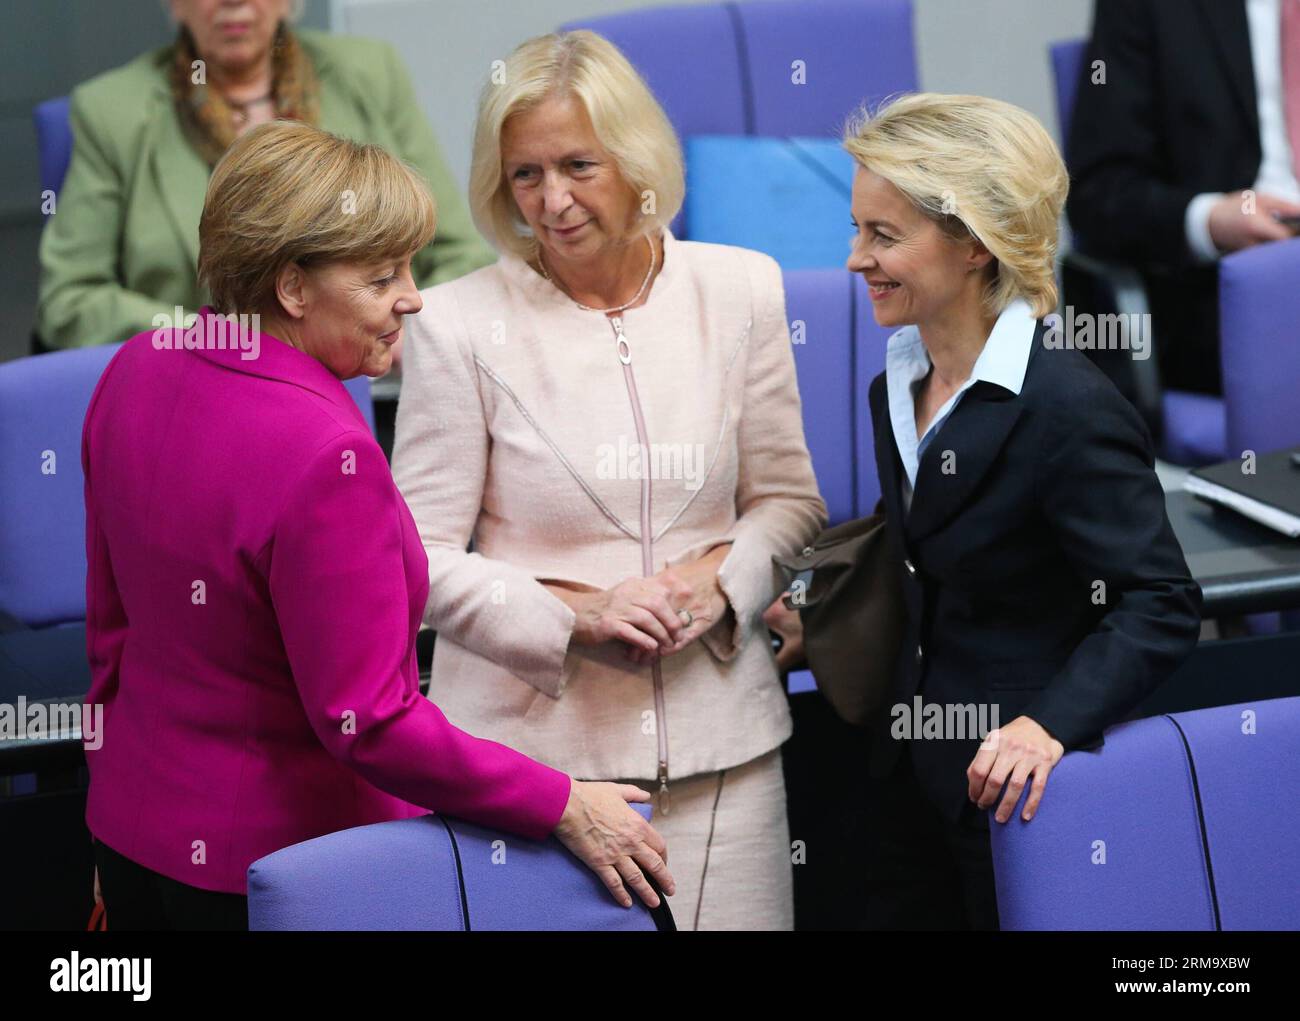 (140604) -- BERLINO, 4 giugno 2014 (Xinhua) -- (L-R) il cancelliere tedesco Angela Merkel, il ministro tedesco dell'istruzione e della ricerca Johanna Wanka e il ministro tedesco della difesa Ursula von der Leyen partecipano a una riunione al Bundestag, la camera bassa del parlamento, a Berlino, in Germania, il 4 giugno 2014. Il vertice del G7, fissato per Bruxelles il 4-5 giugno, si concentrerà sulla situazione dell'Ucraina, sui legami con la Russia, sull'economia globale e sulla sicurezza energetica, secondo l'agenda preliminare presentata dall'Unione europea (UE). (Xinhua/Zhang fan) GERMANIA-BERLINO-POLITICS-G7-MERKEL PUBLICATIONxNOTxINxCHN Berlino 4 giugno 2014 XINHUA Foto Stock